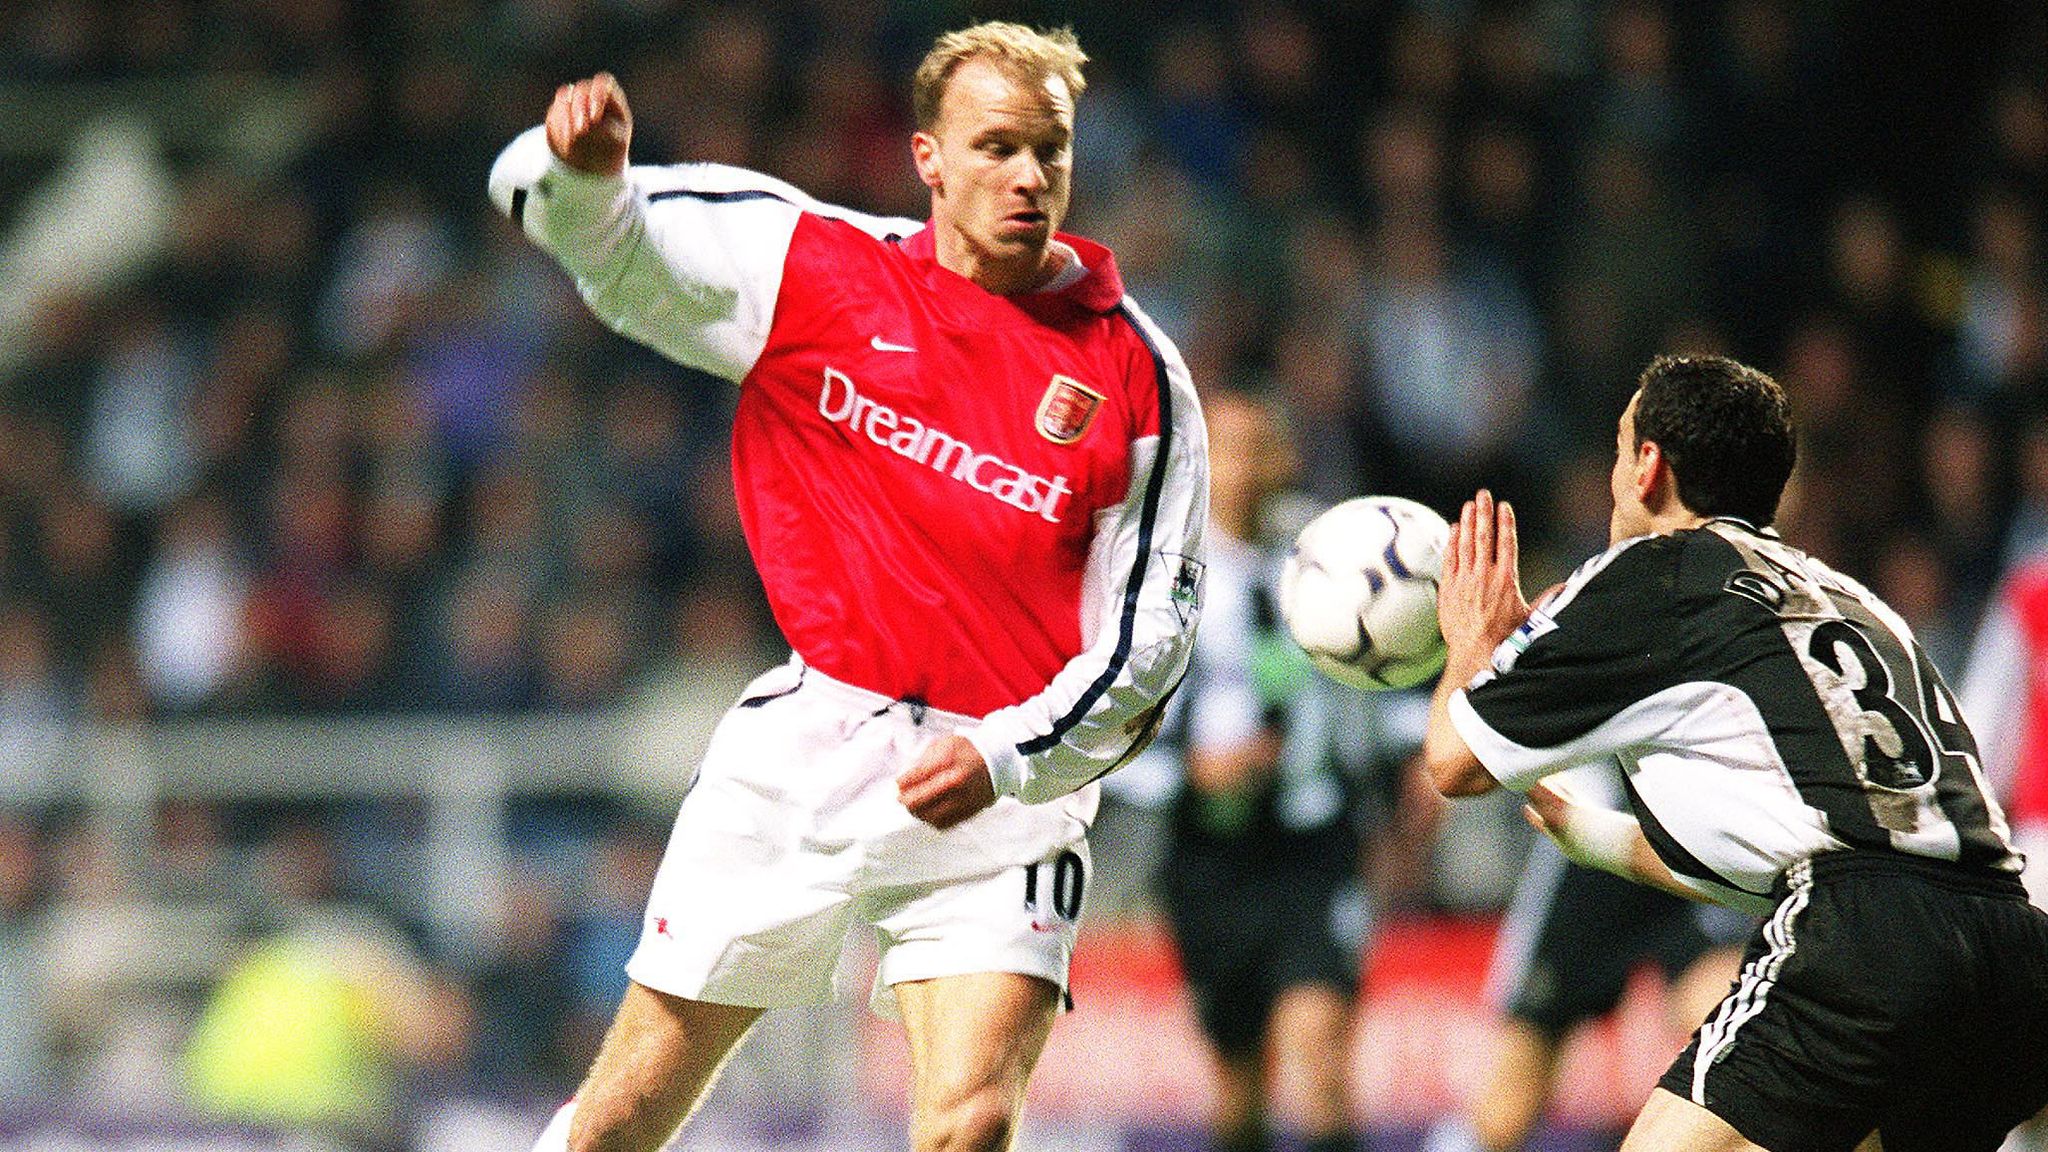 Dennis Bergkamp playing for Arsenal 2002